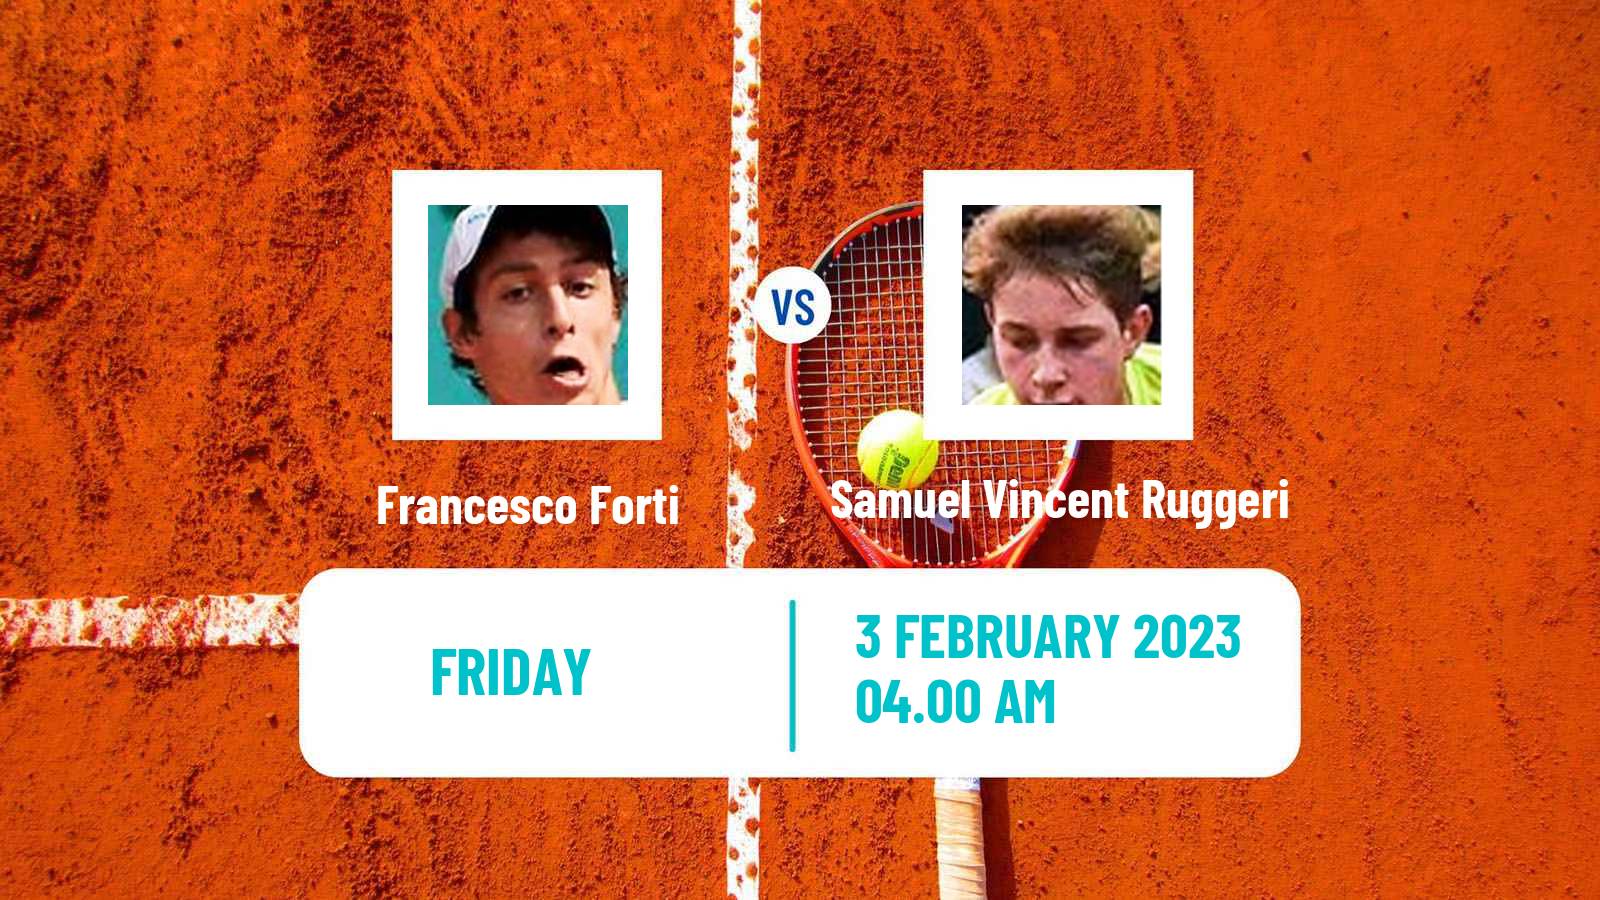 Tennis ITF Tournaments Francesco Forti - Samuel Vincent Ruggeri